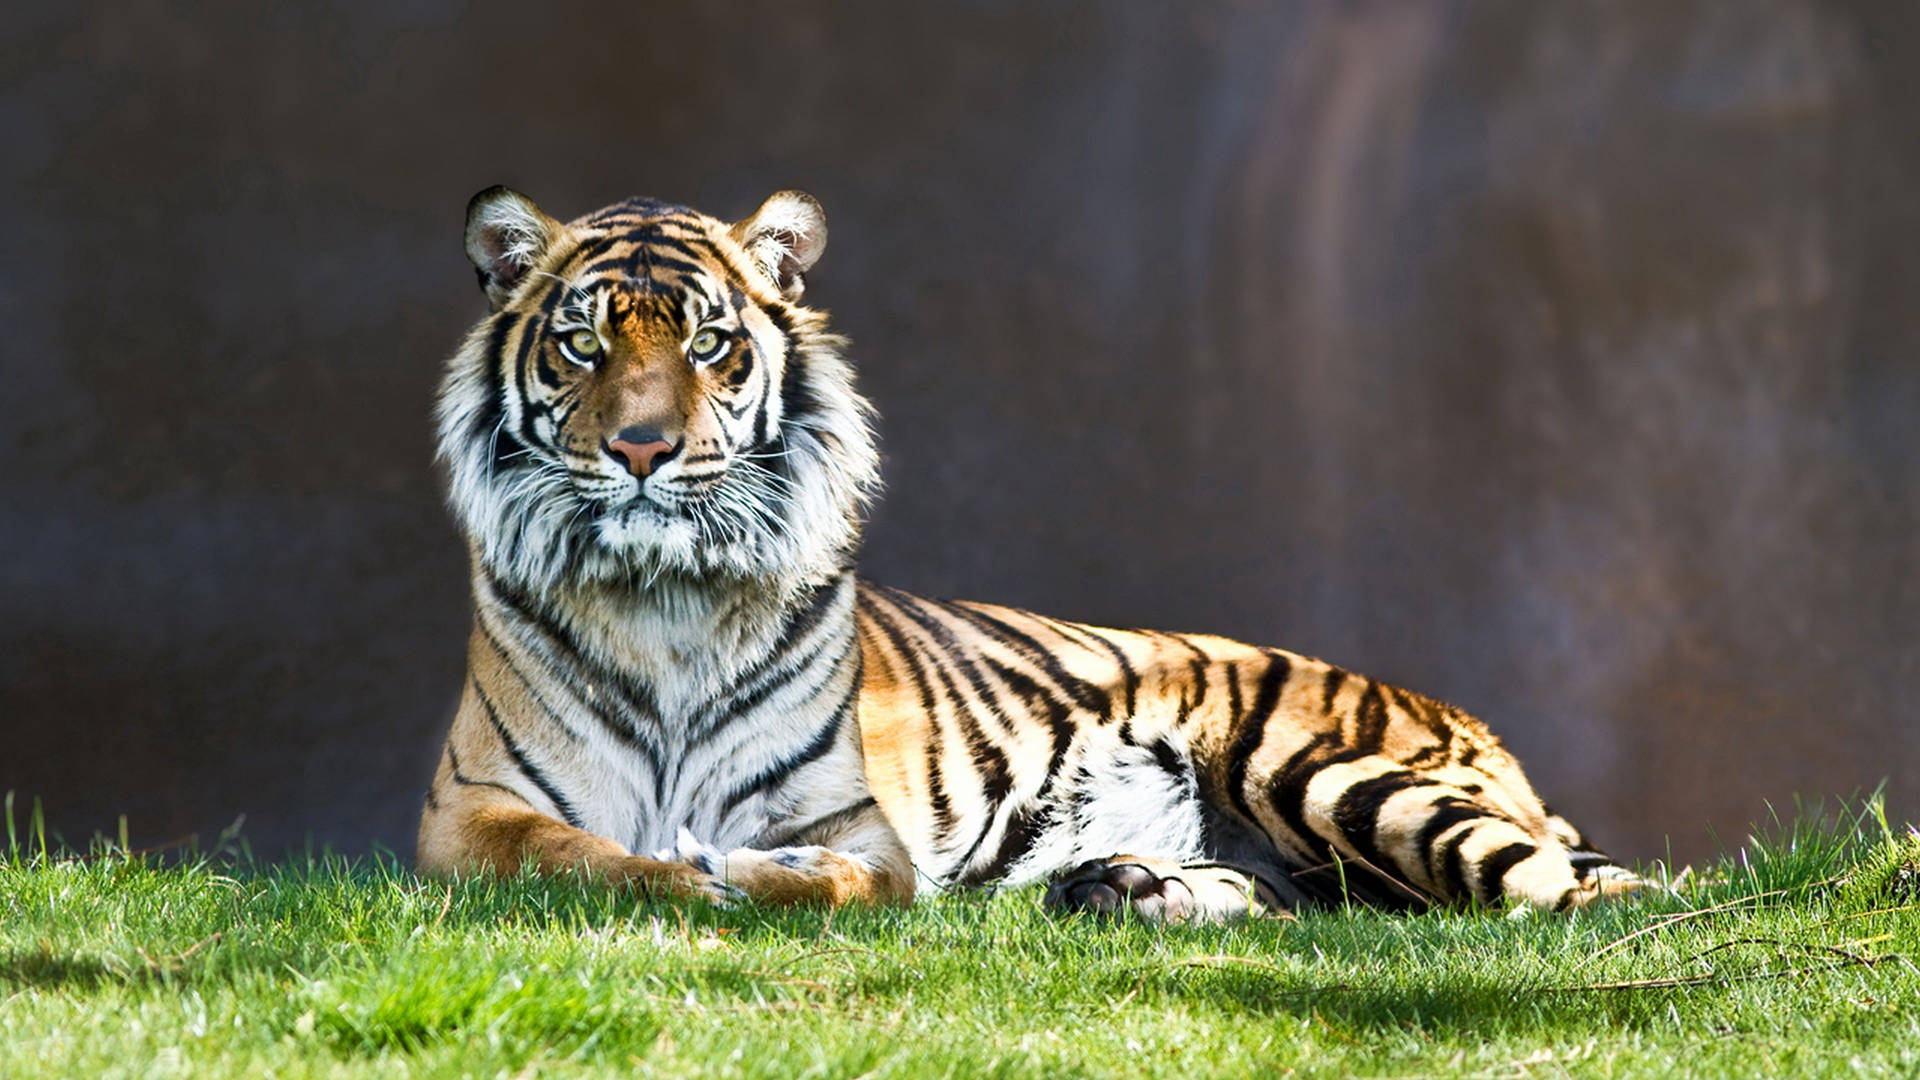 Predator Tiger Sitting On Grass Background